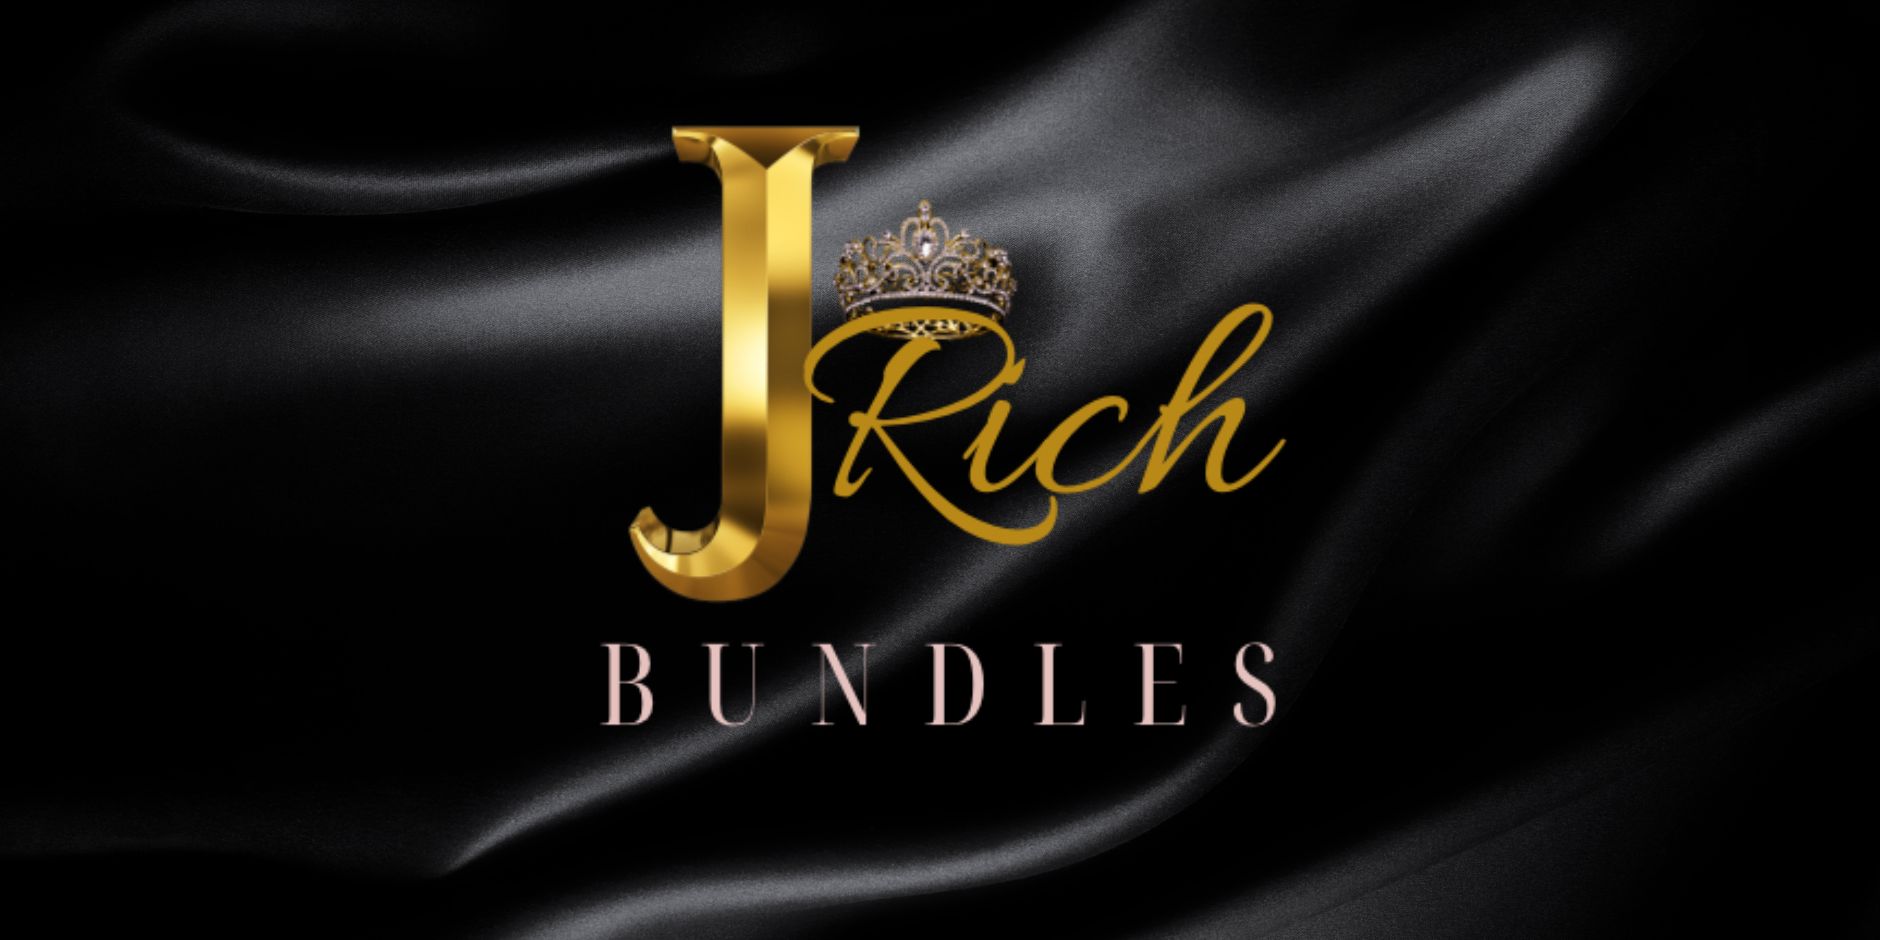 J’Rich Bundles